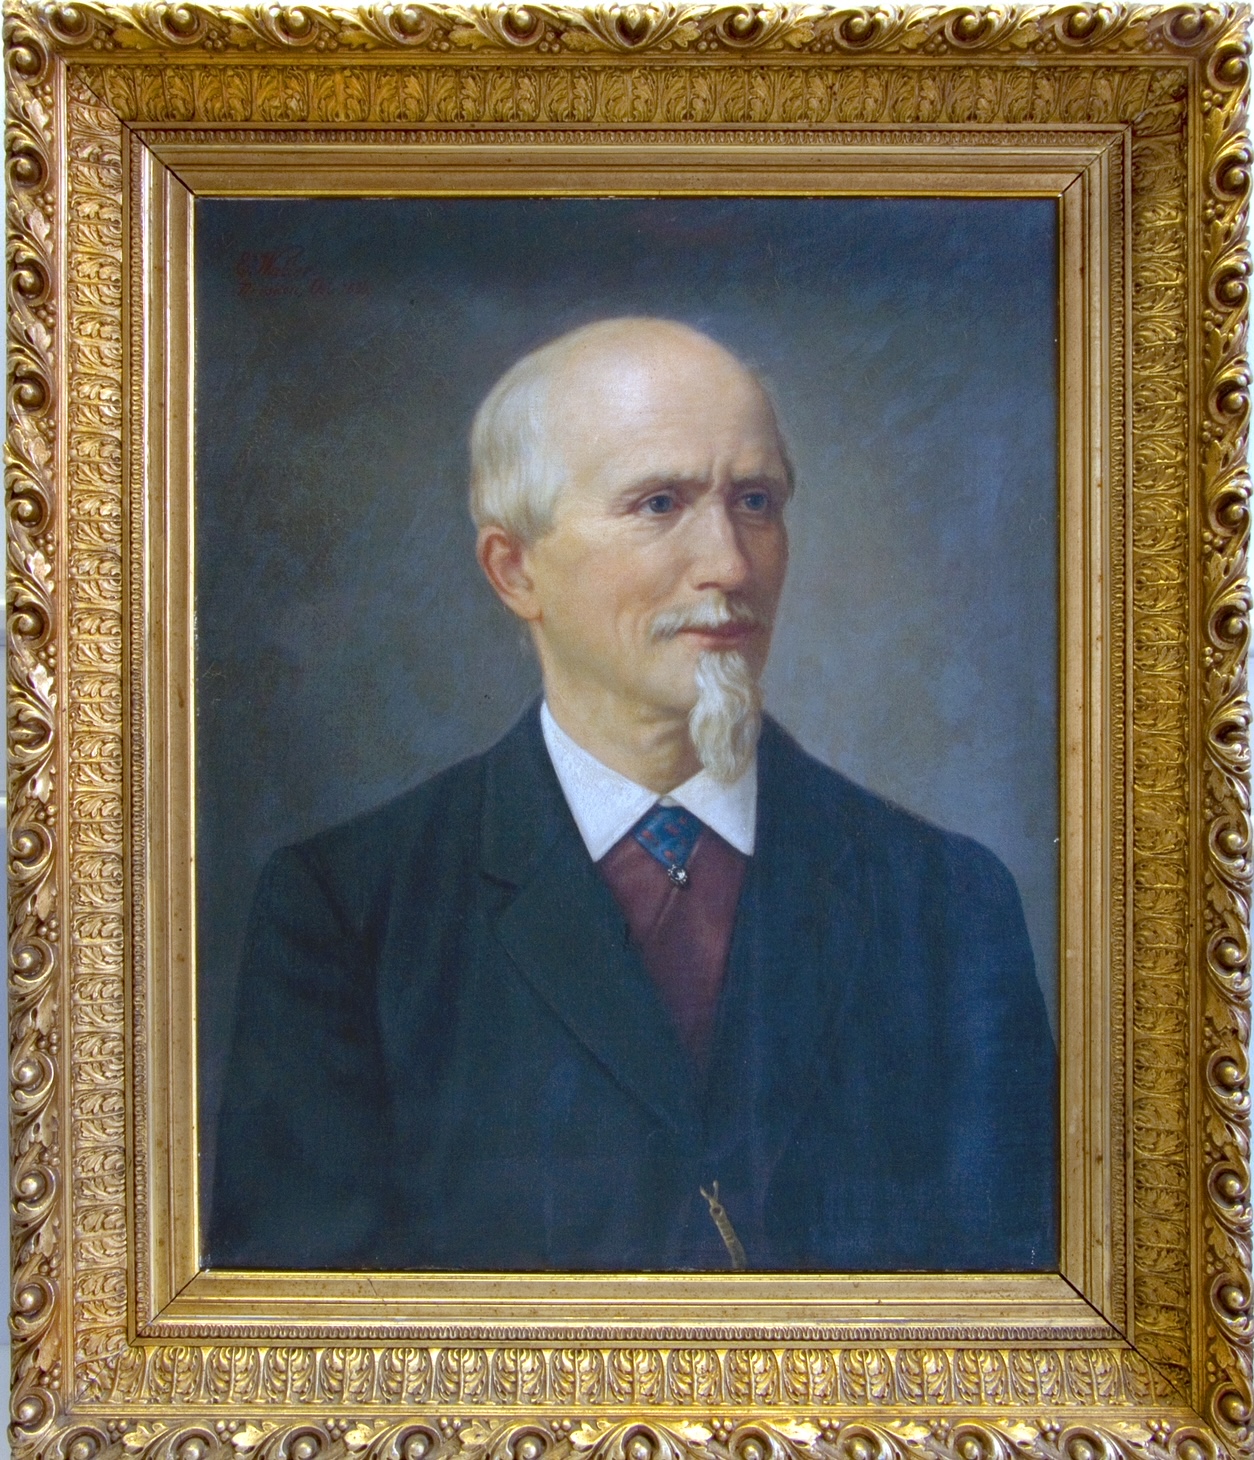 Historical image of Carl Moritz Grossmann